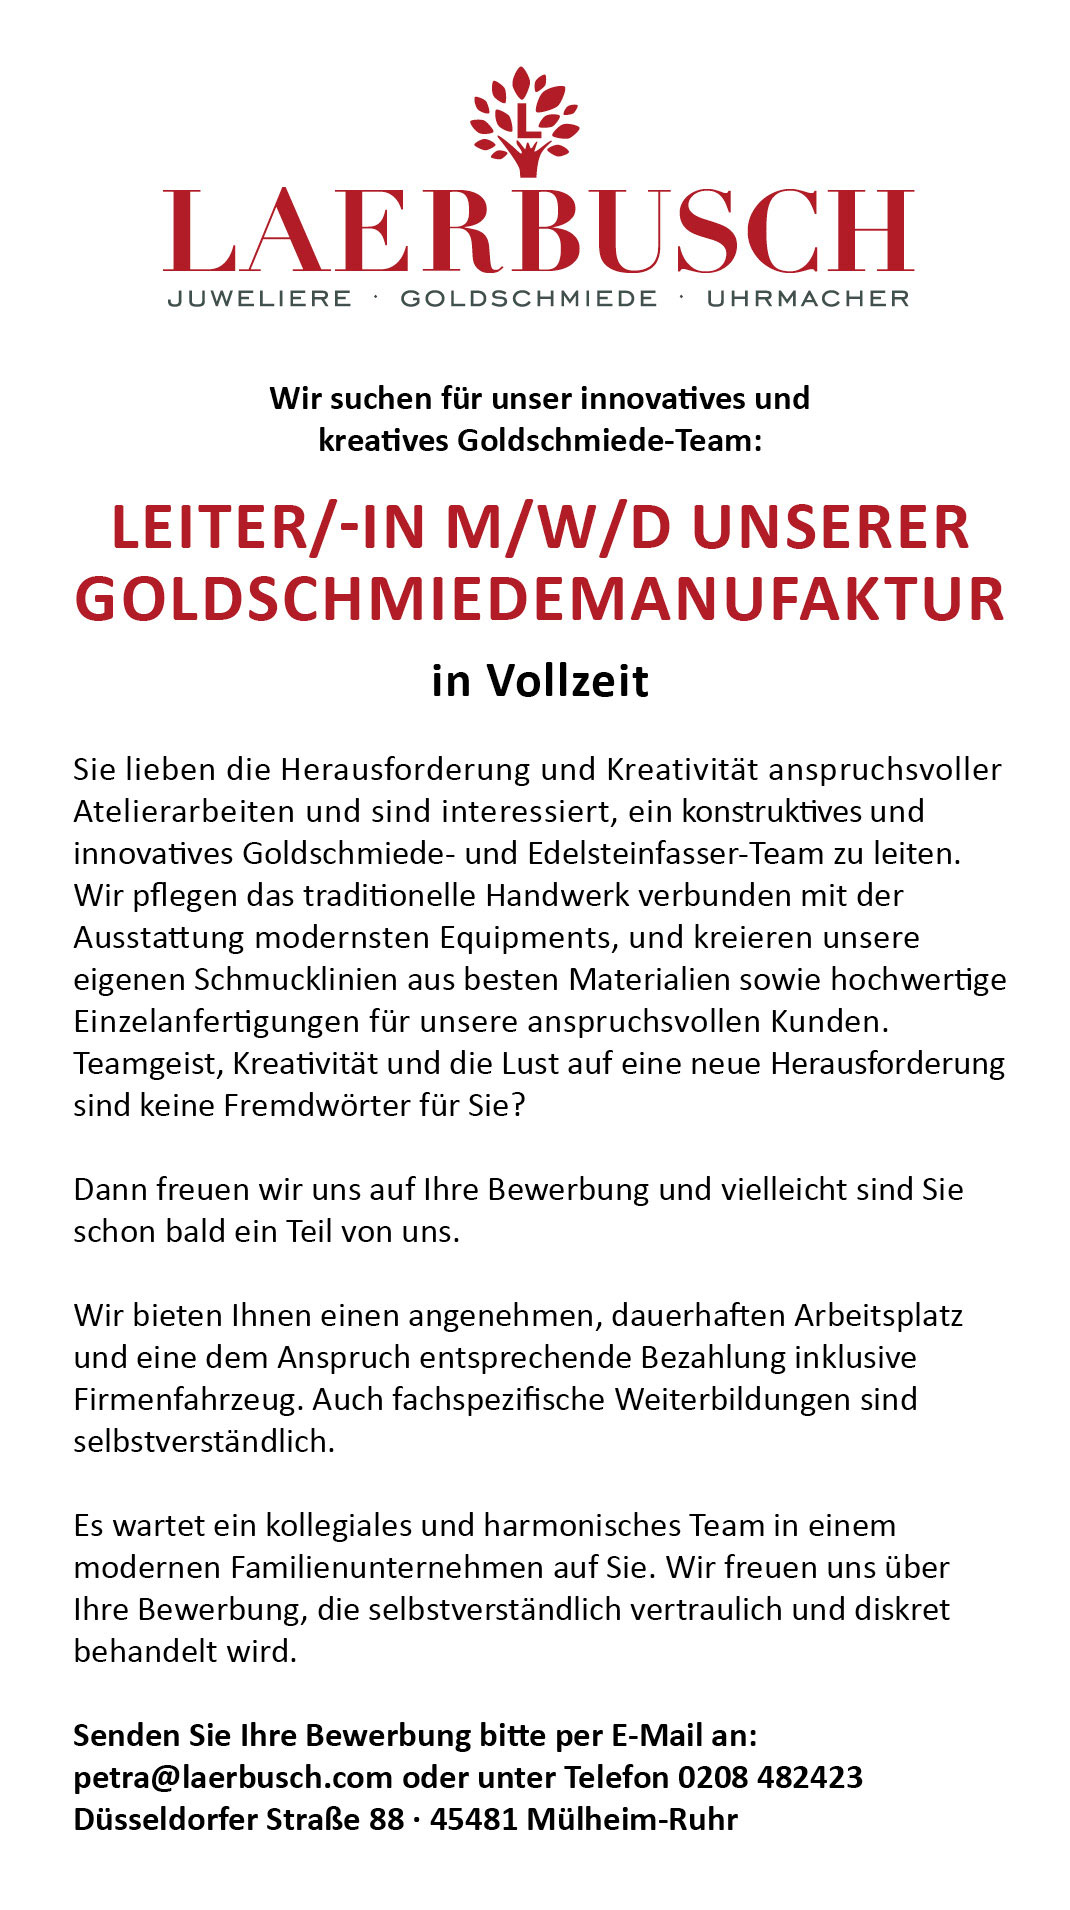 Juwelier Laerbusch - Karriere - Goldschmied*in, Uhrmachermeister*in, Verkäufer*n - Mülheim an der Ruhr - Rolex, Patek Philippe, Tudor